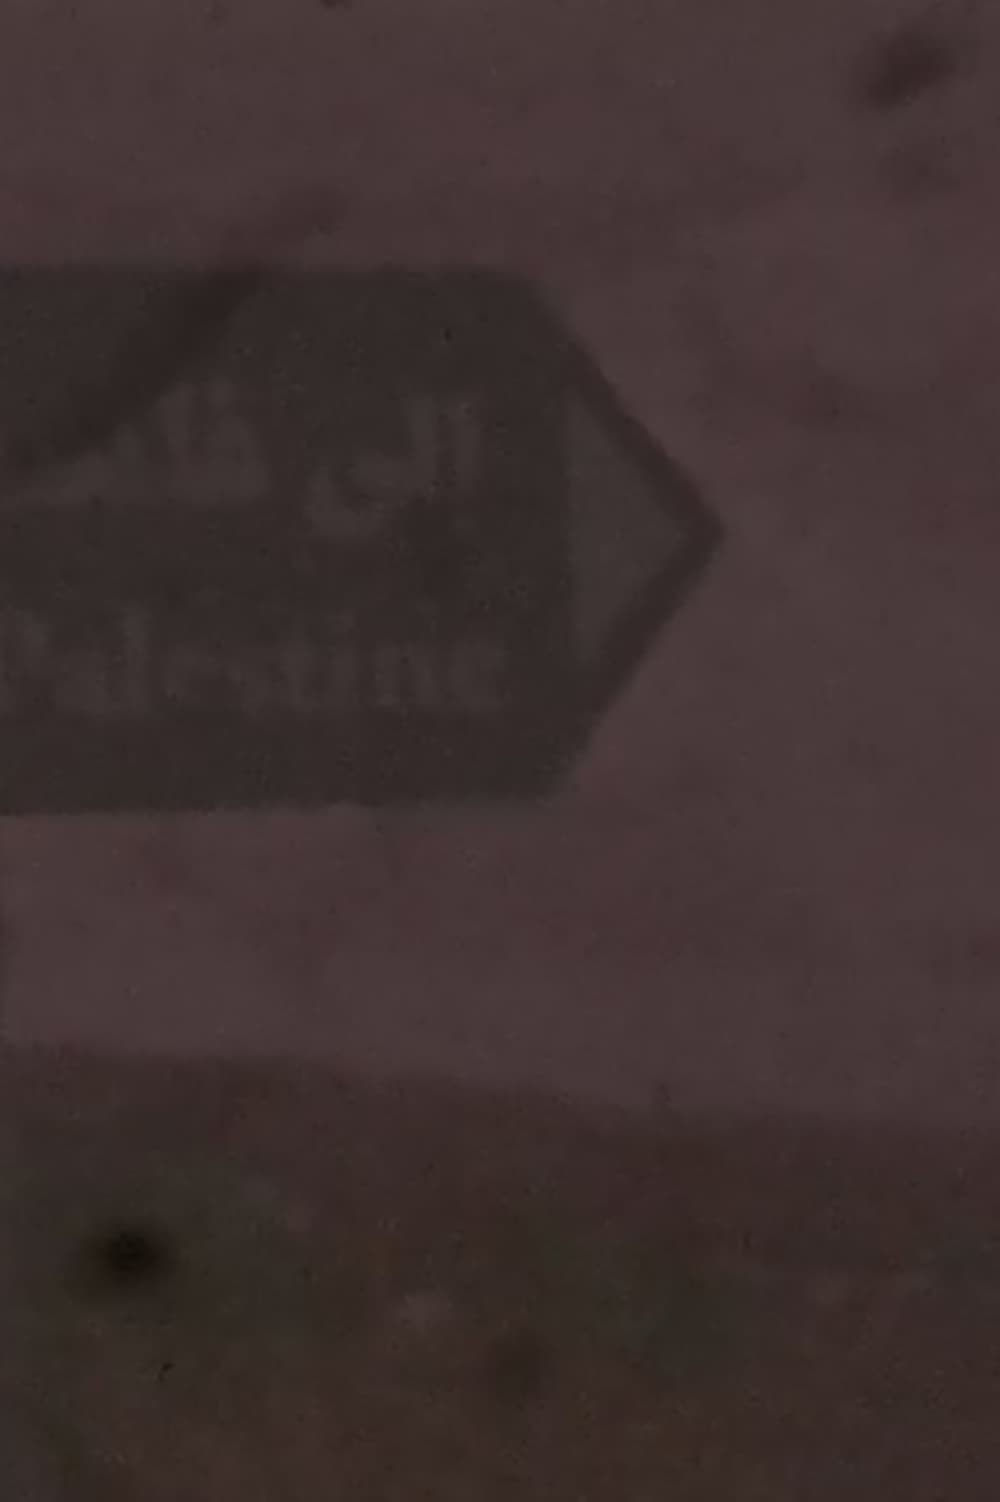 Katsakh: 1km to Palestine